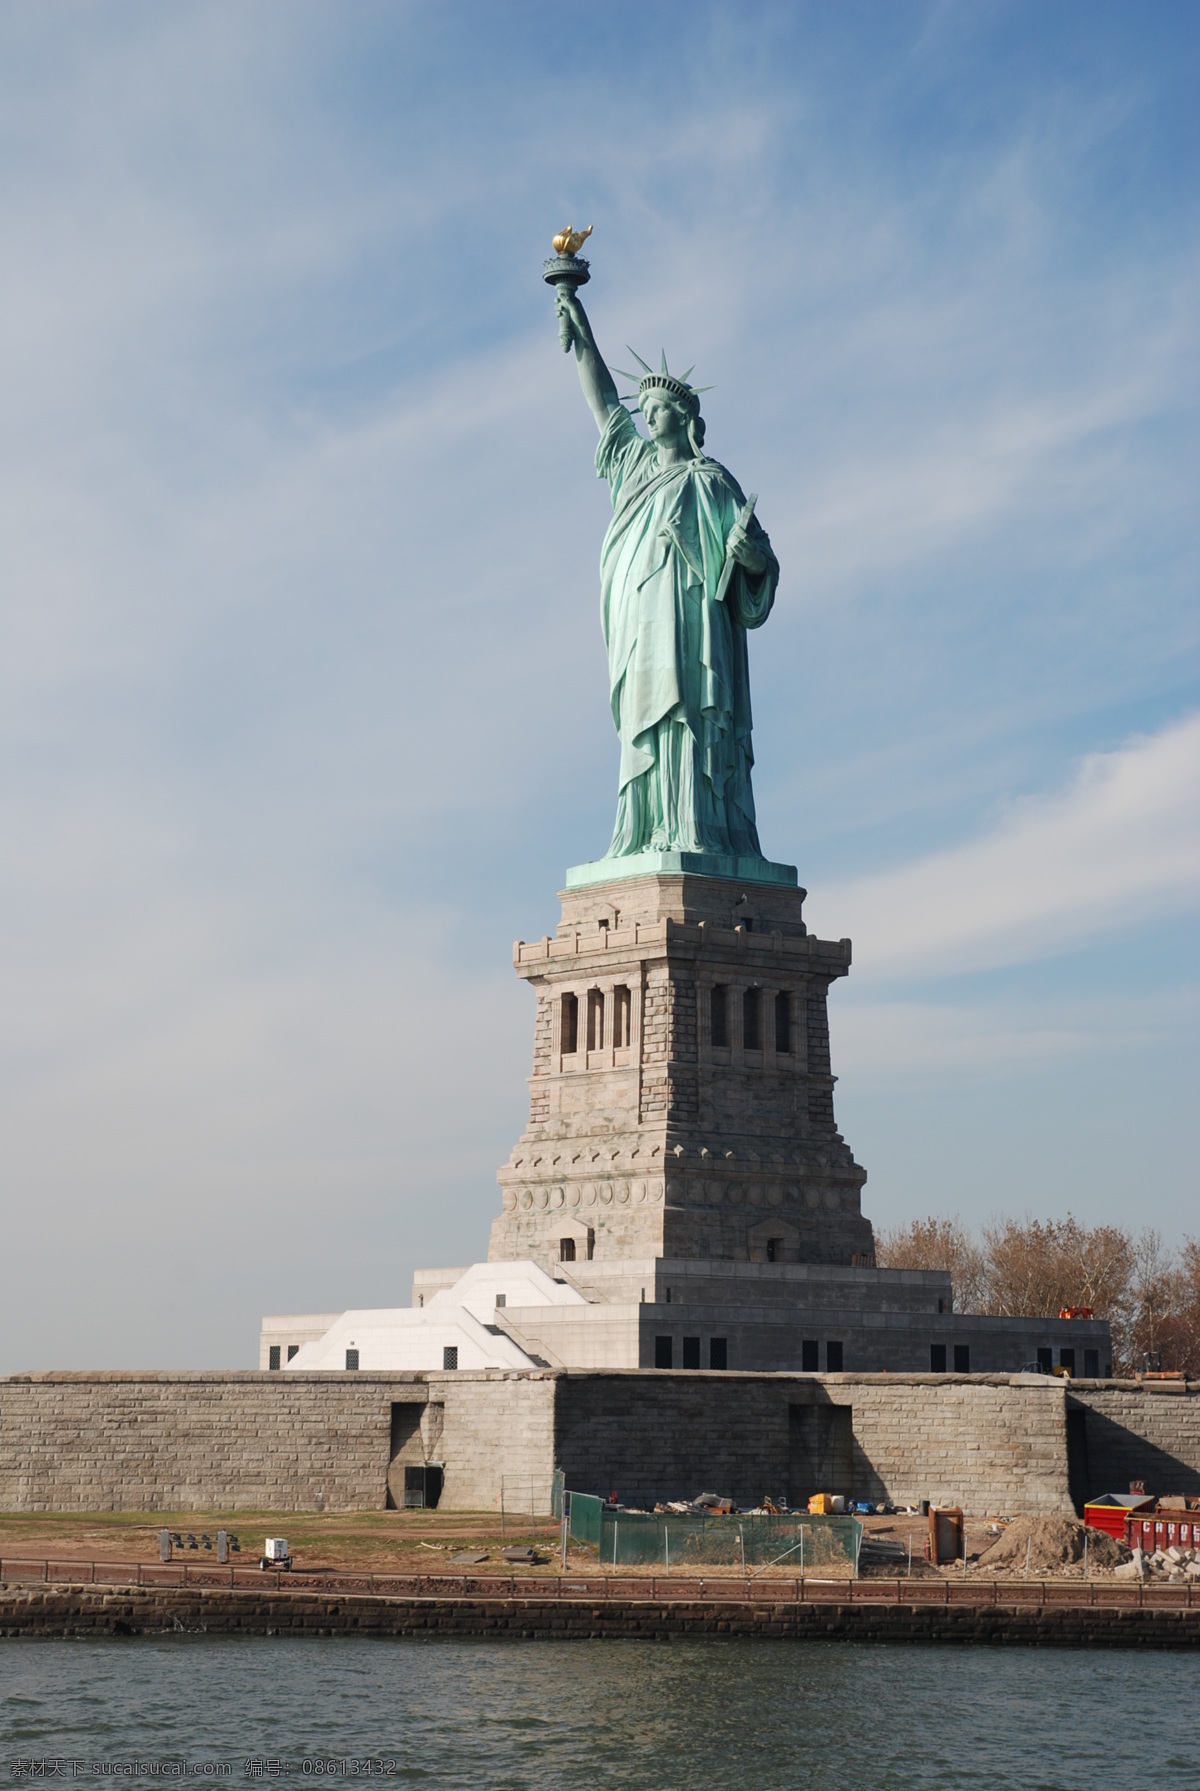 雕像 国外旅游 海景 建筑 街景 旅游摄影 曼哈顿 美国 自由女神 纽约 塑像 铜像 美利坚东岸 风景 生活 旅游餐饮